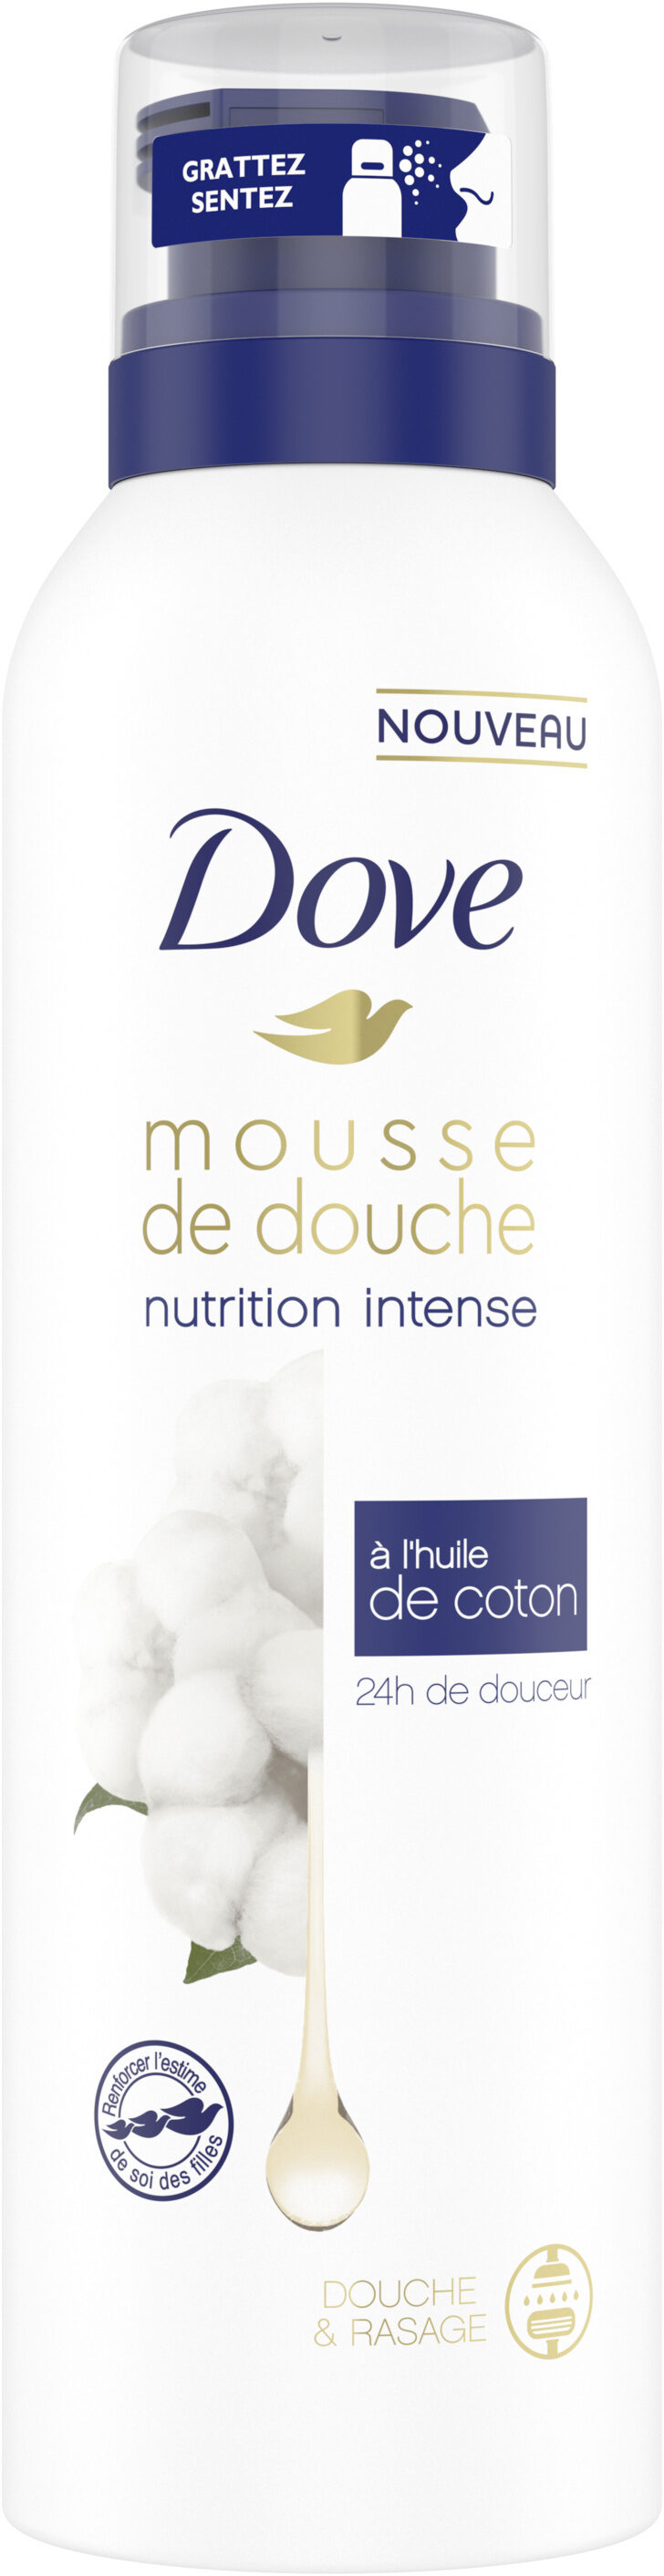 Dove Nutrition Intense Gel Douche Mousse à l'Huile de Coton 24h de Douceur Douche & Rasage - Produto - fr